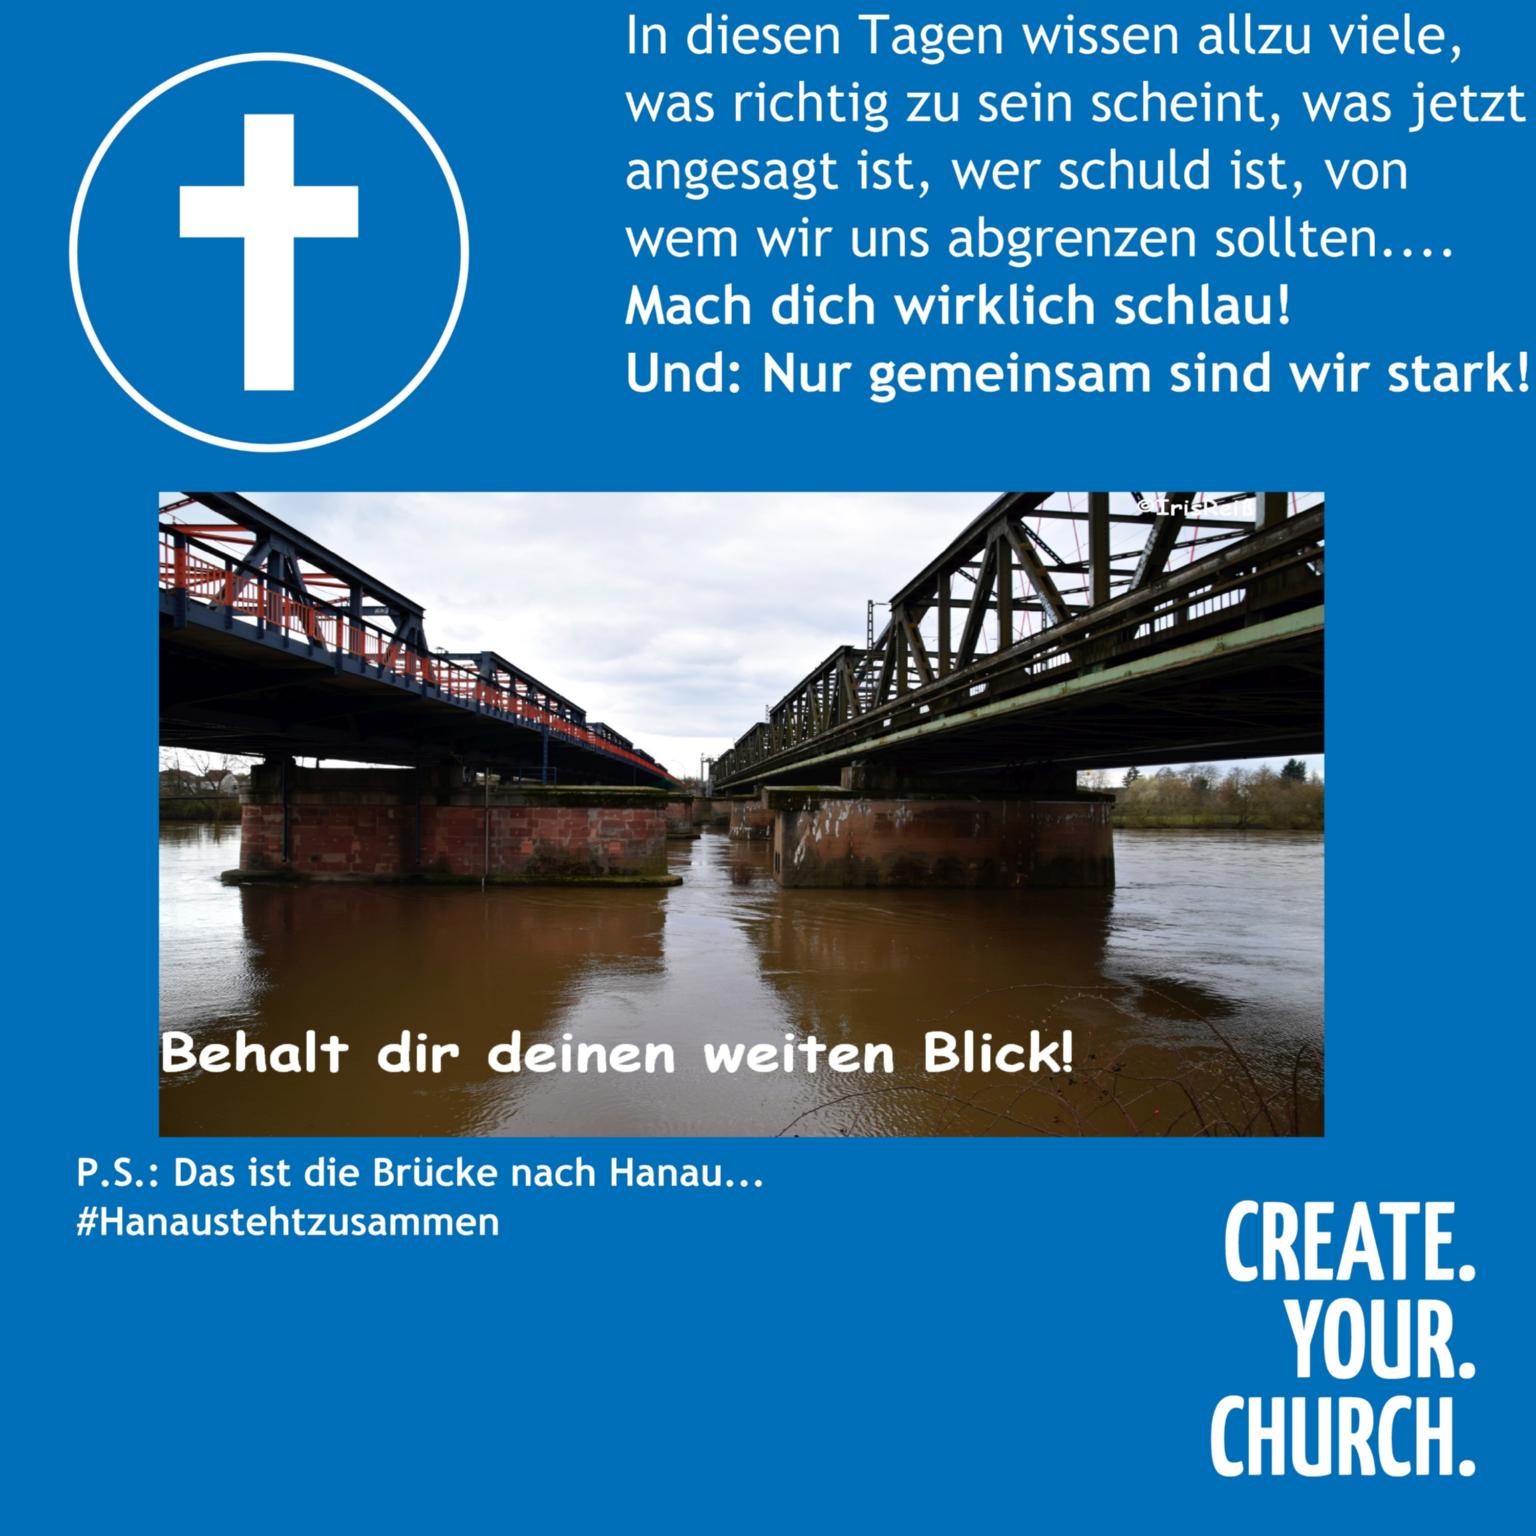 Blick (c) BDKJ Mainz